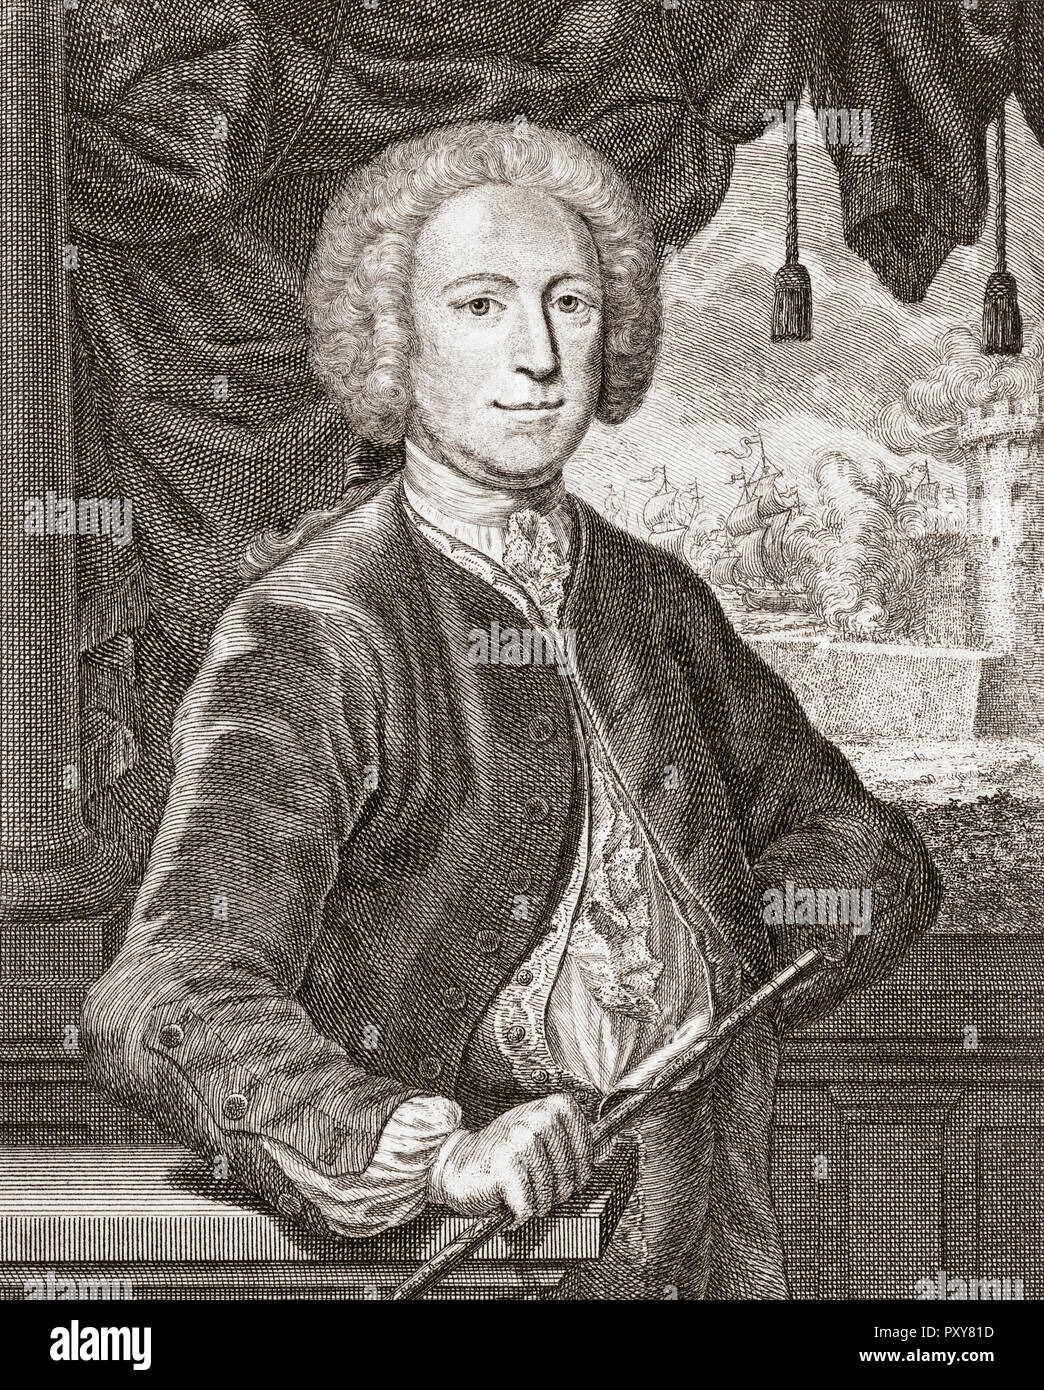 George Anson, 1er baron Anson, 1697-1762. L'amiral britannique et riche aristocrate remarqué pour son circumnavigatiion du globe. Banque D'Images